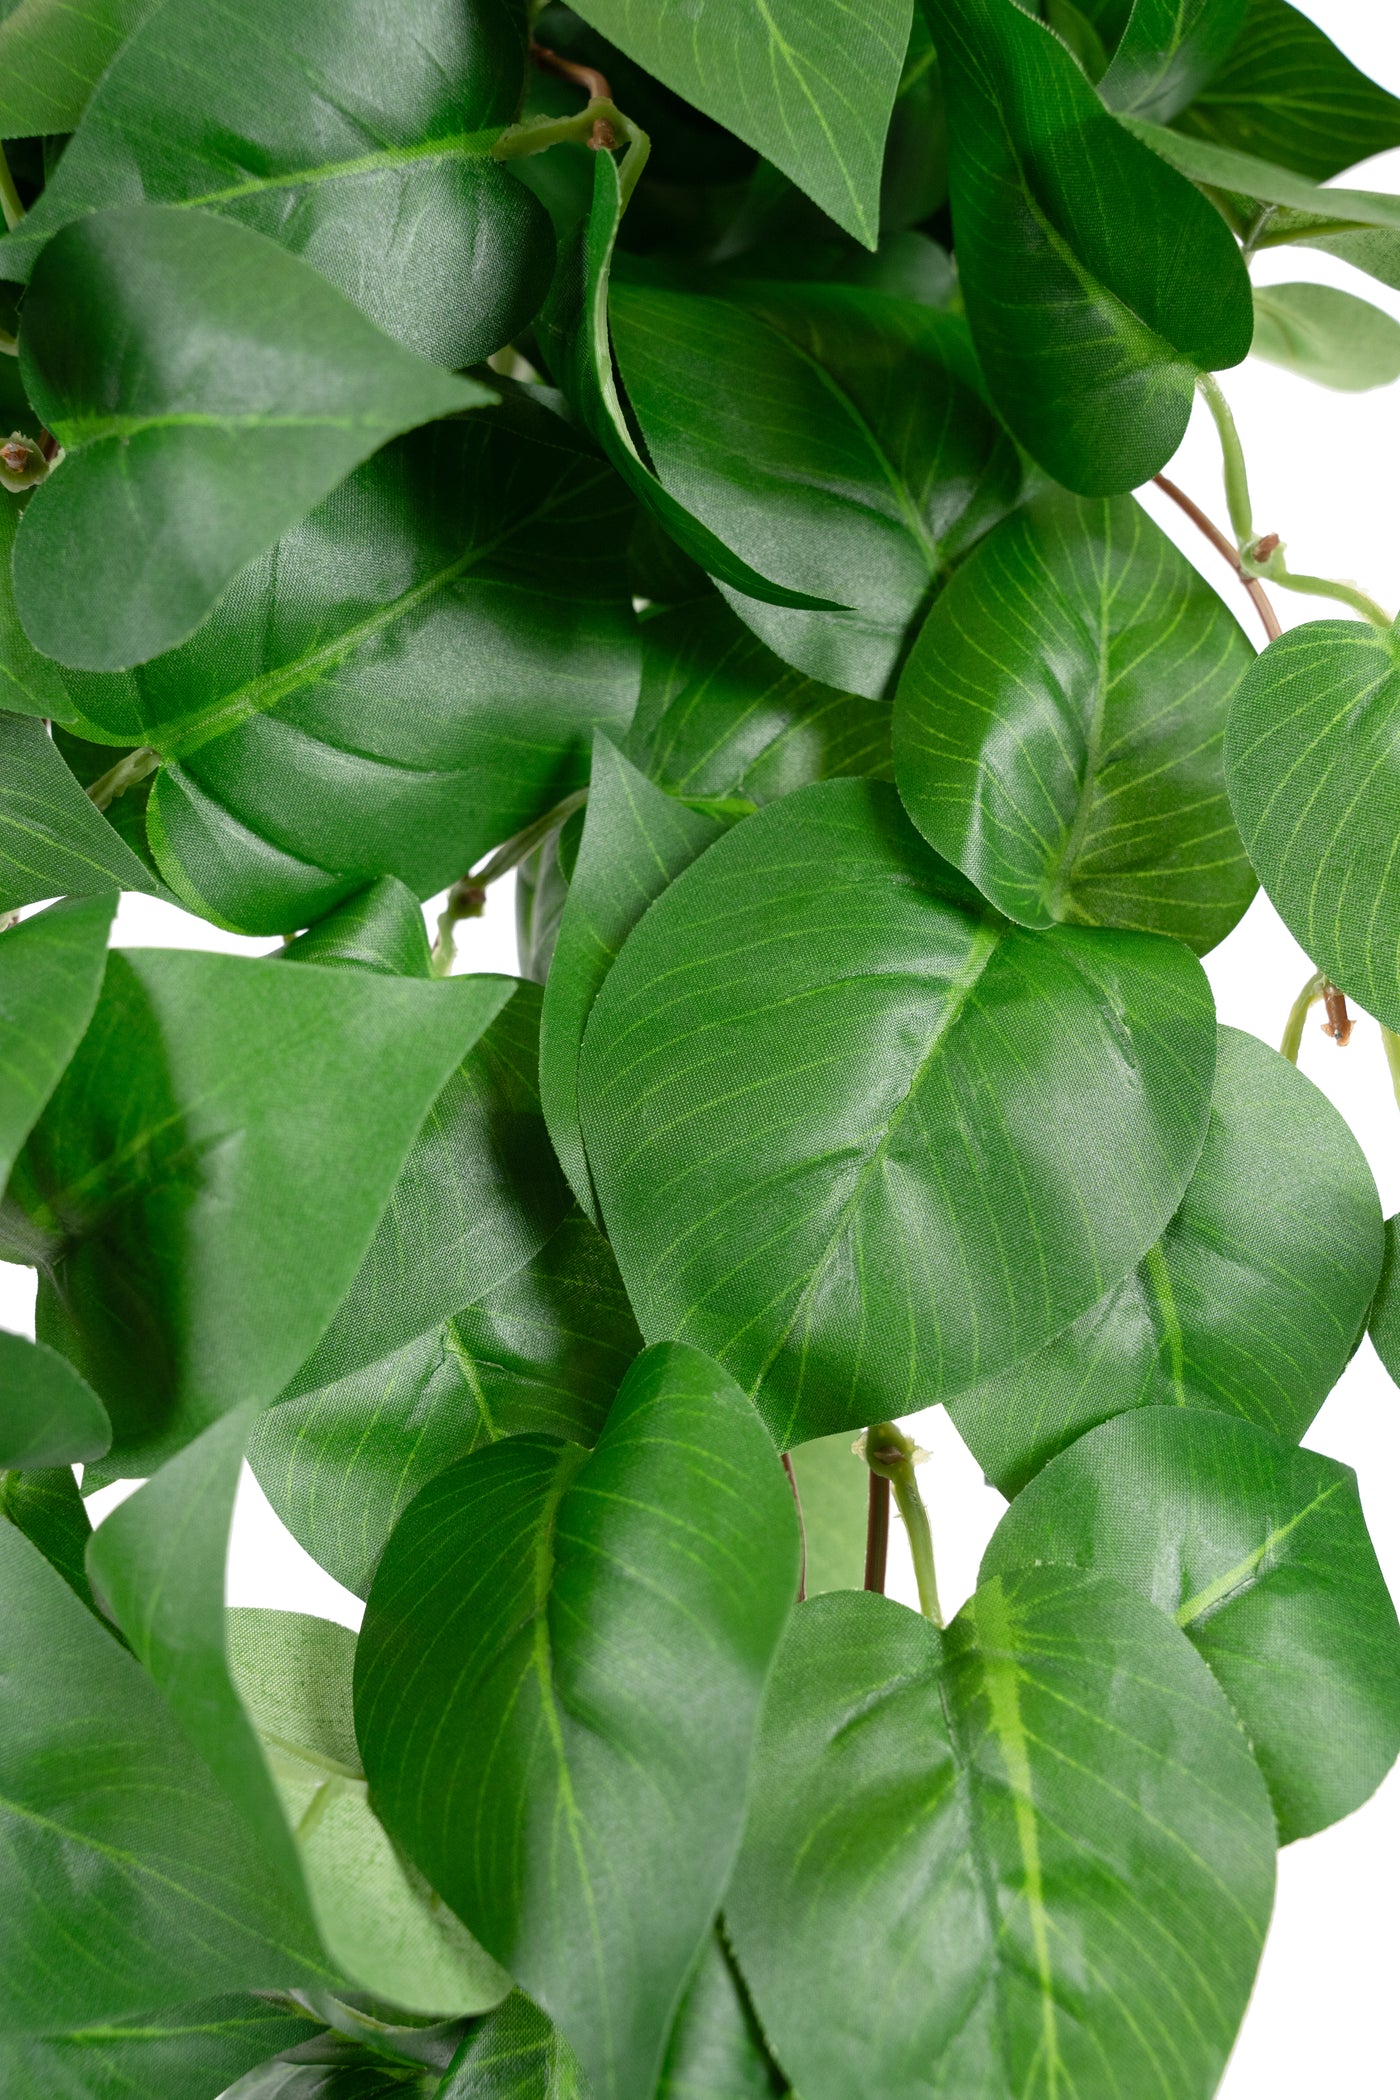 Scindapsus artificial 50 cm cu 128 frunze. verde deschis